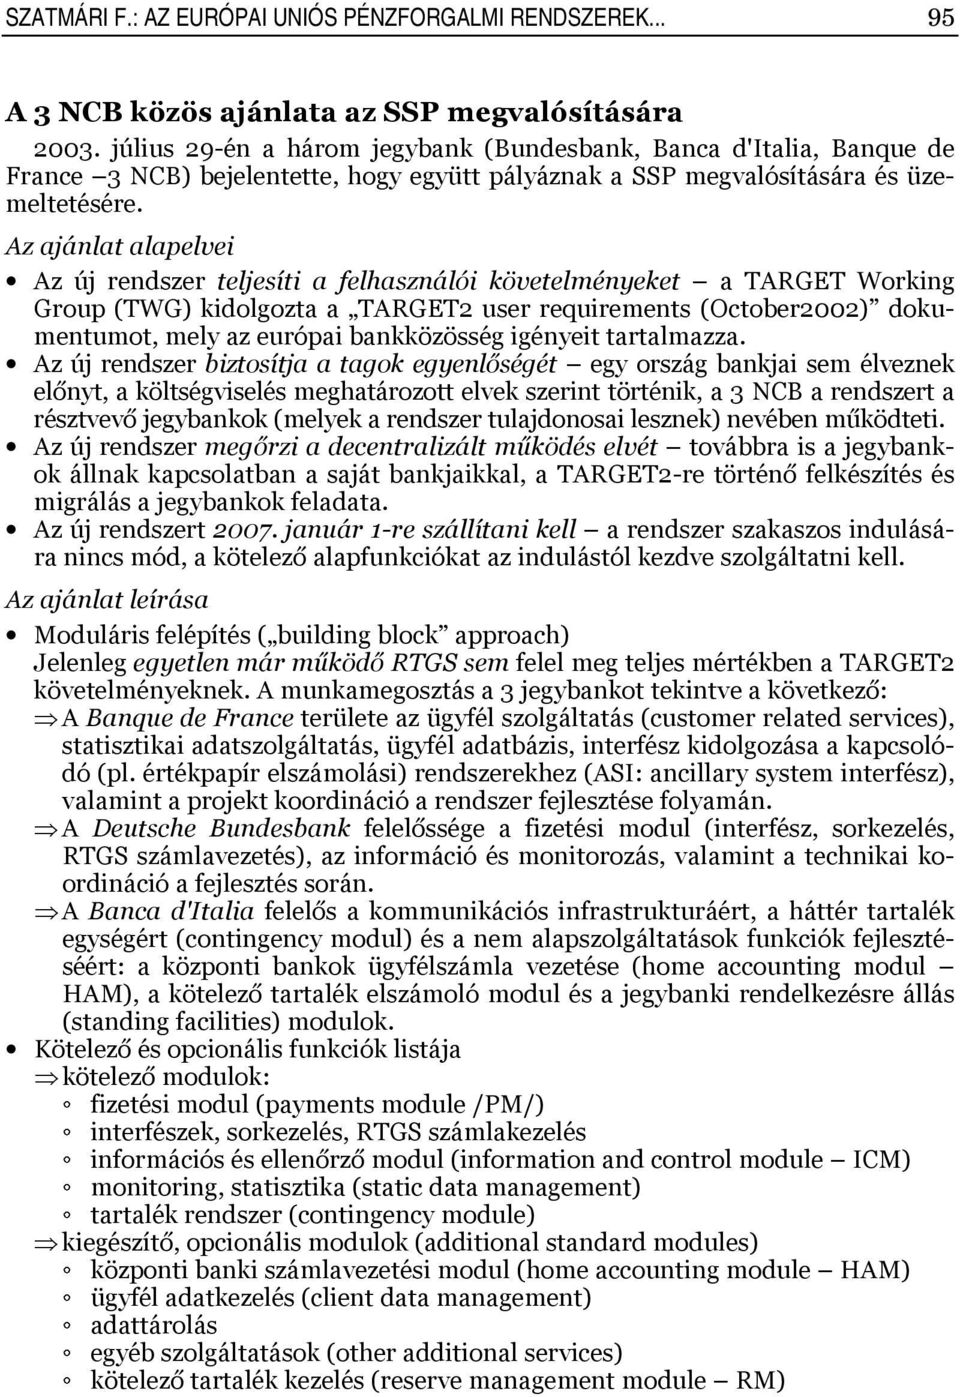 Az ajánlat alapelvei Az új rendszer teljesíti a felhasználói követelményeket a TARGET Working Group (TWG) kidolgozta a TARGET2 user requirements (October2002) dokumentumot, mely az európai